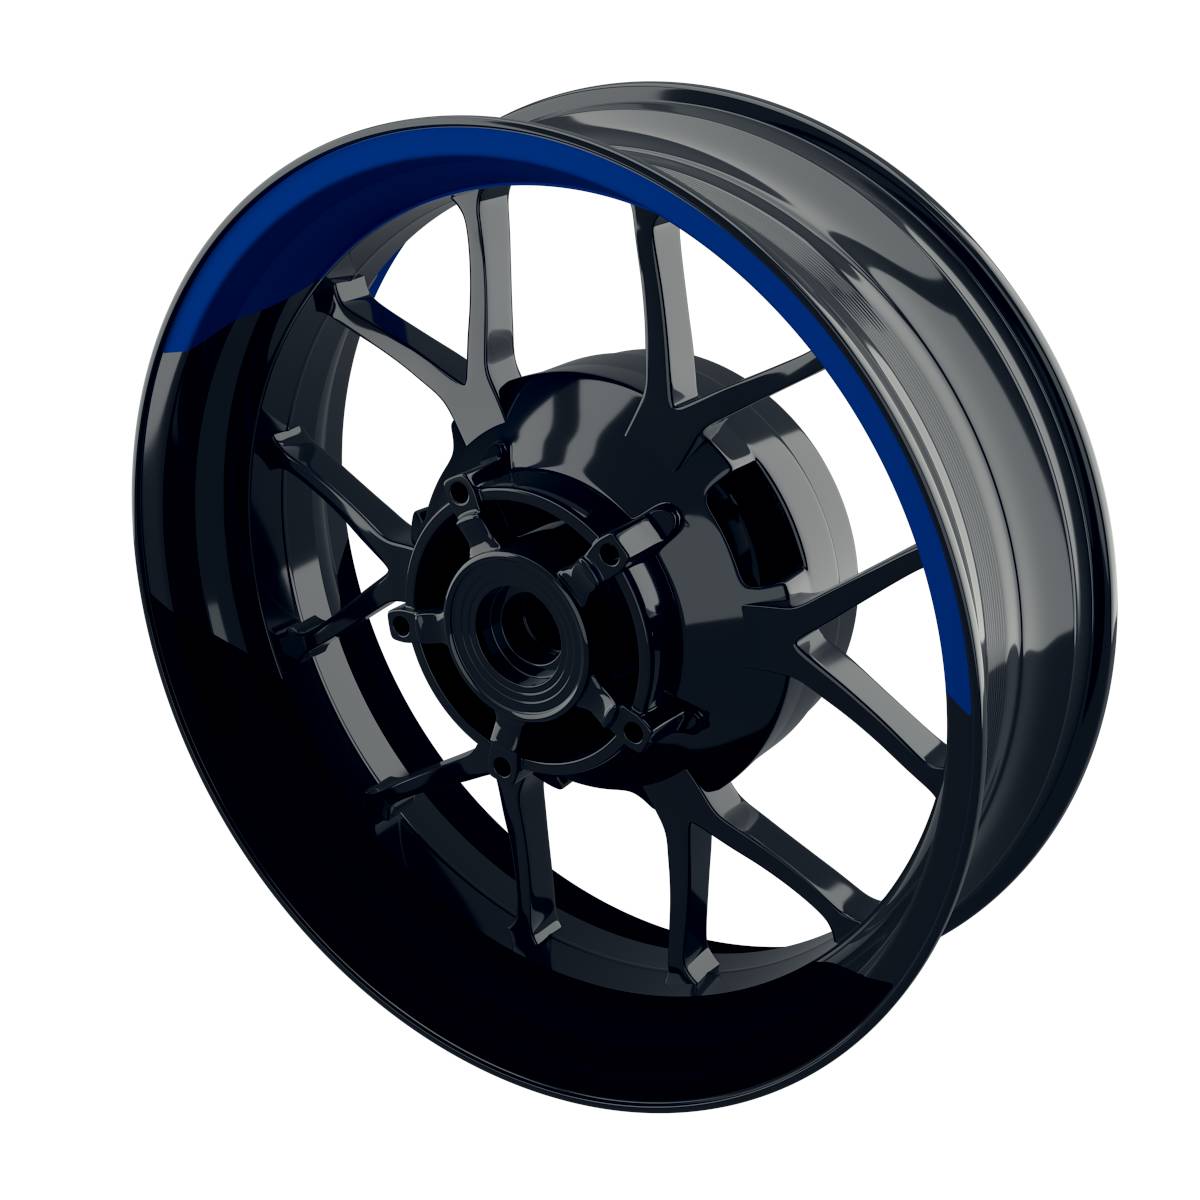 halb halb black Rim Decals Wheelsticker Premium splitted